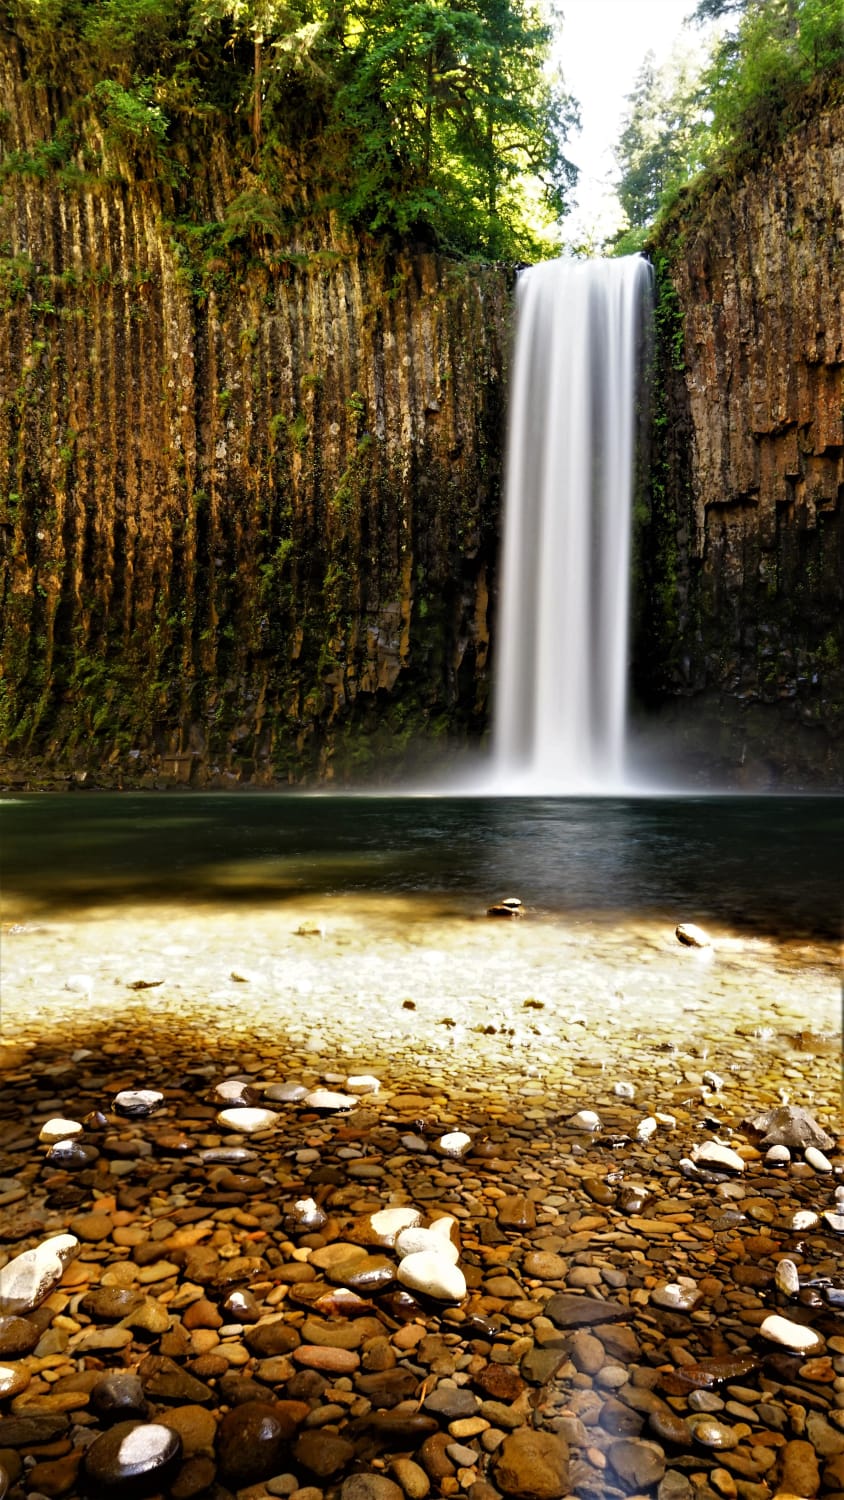 Abiqua falls, Oregon